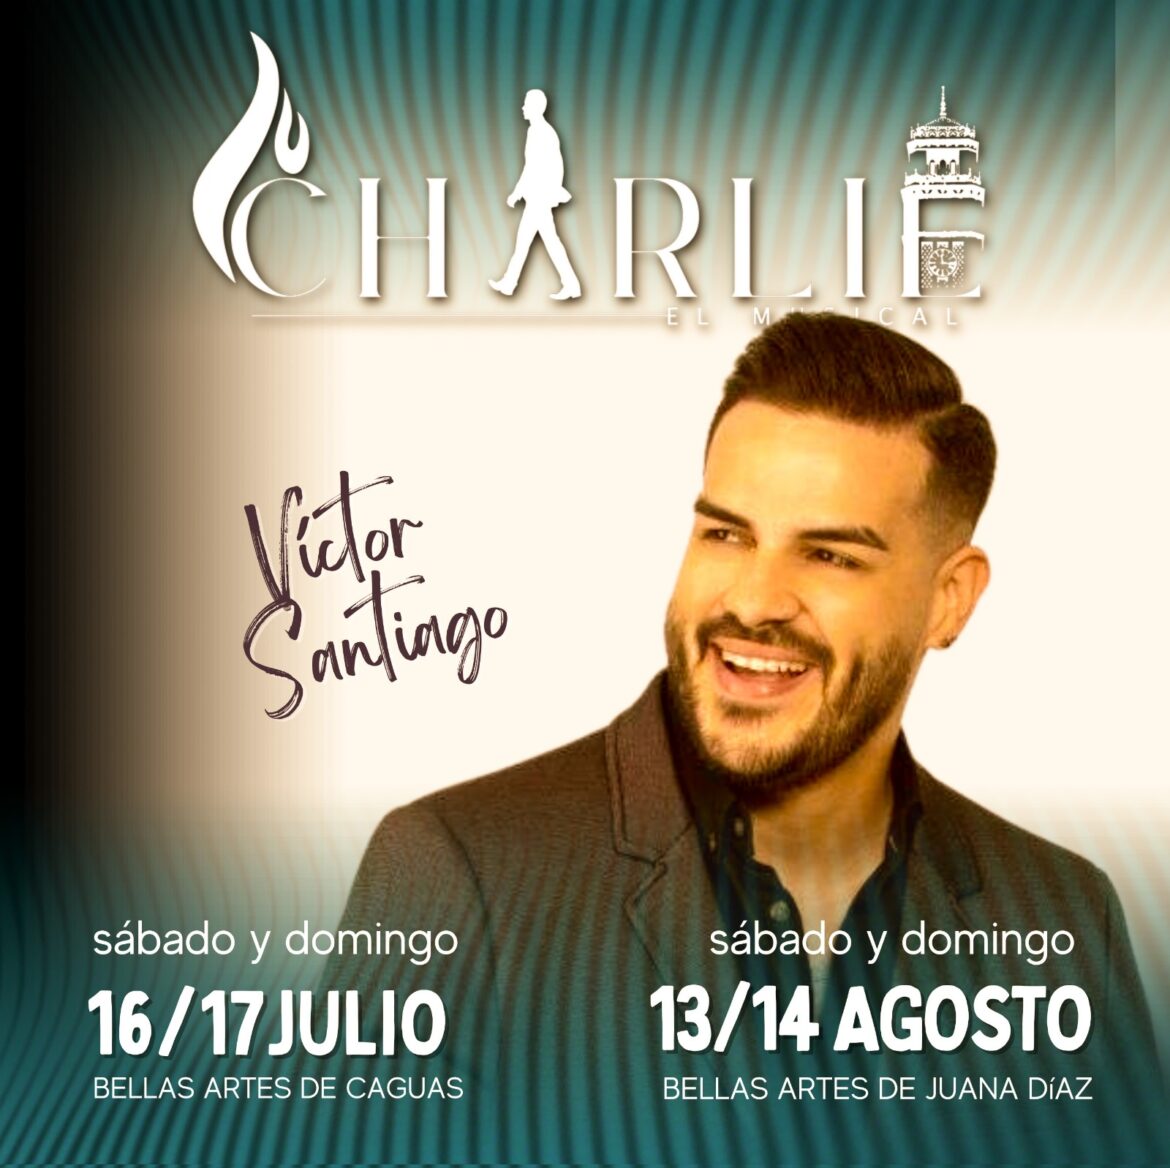 La gira de Charlie, el musical llegará a Caguas y Juana Díaz